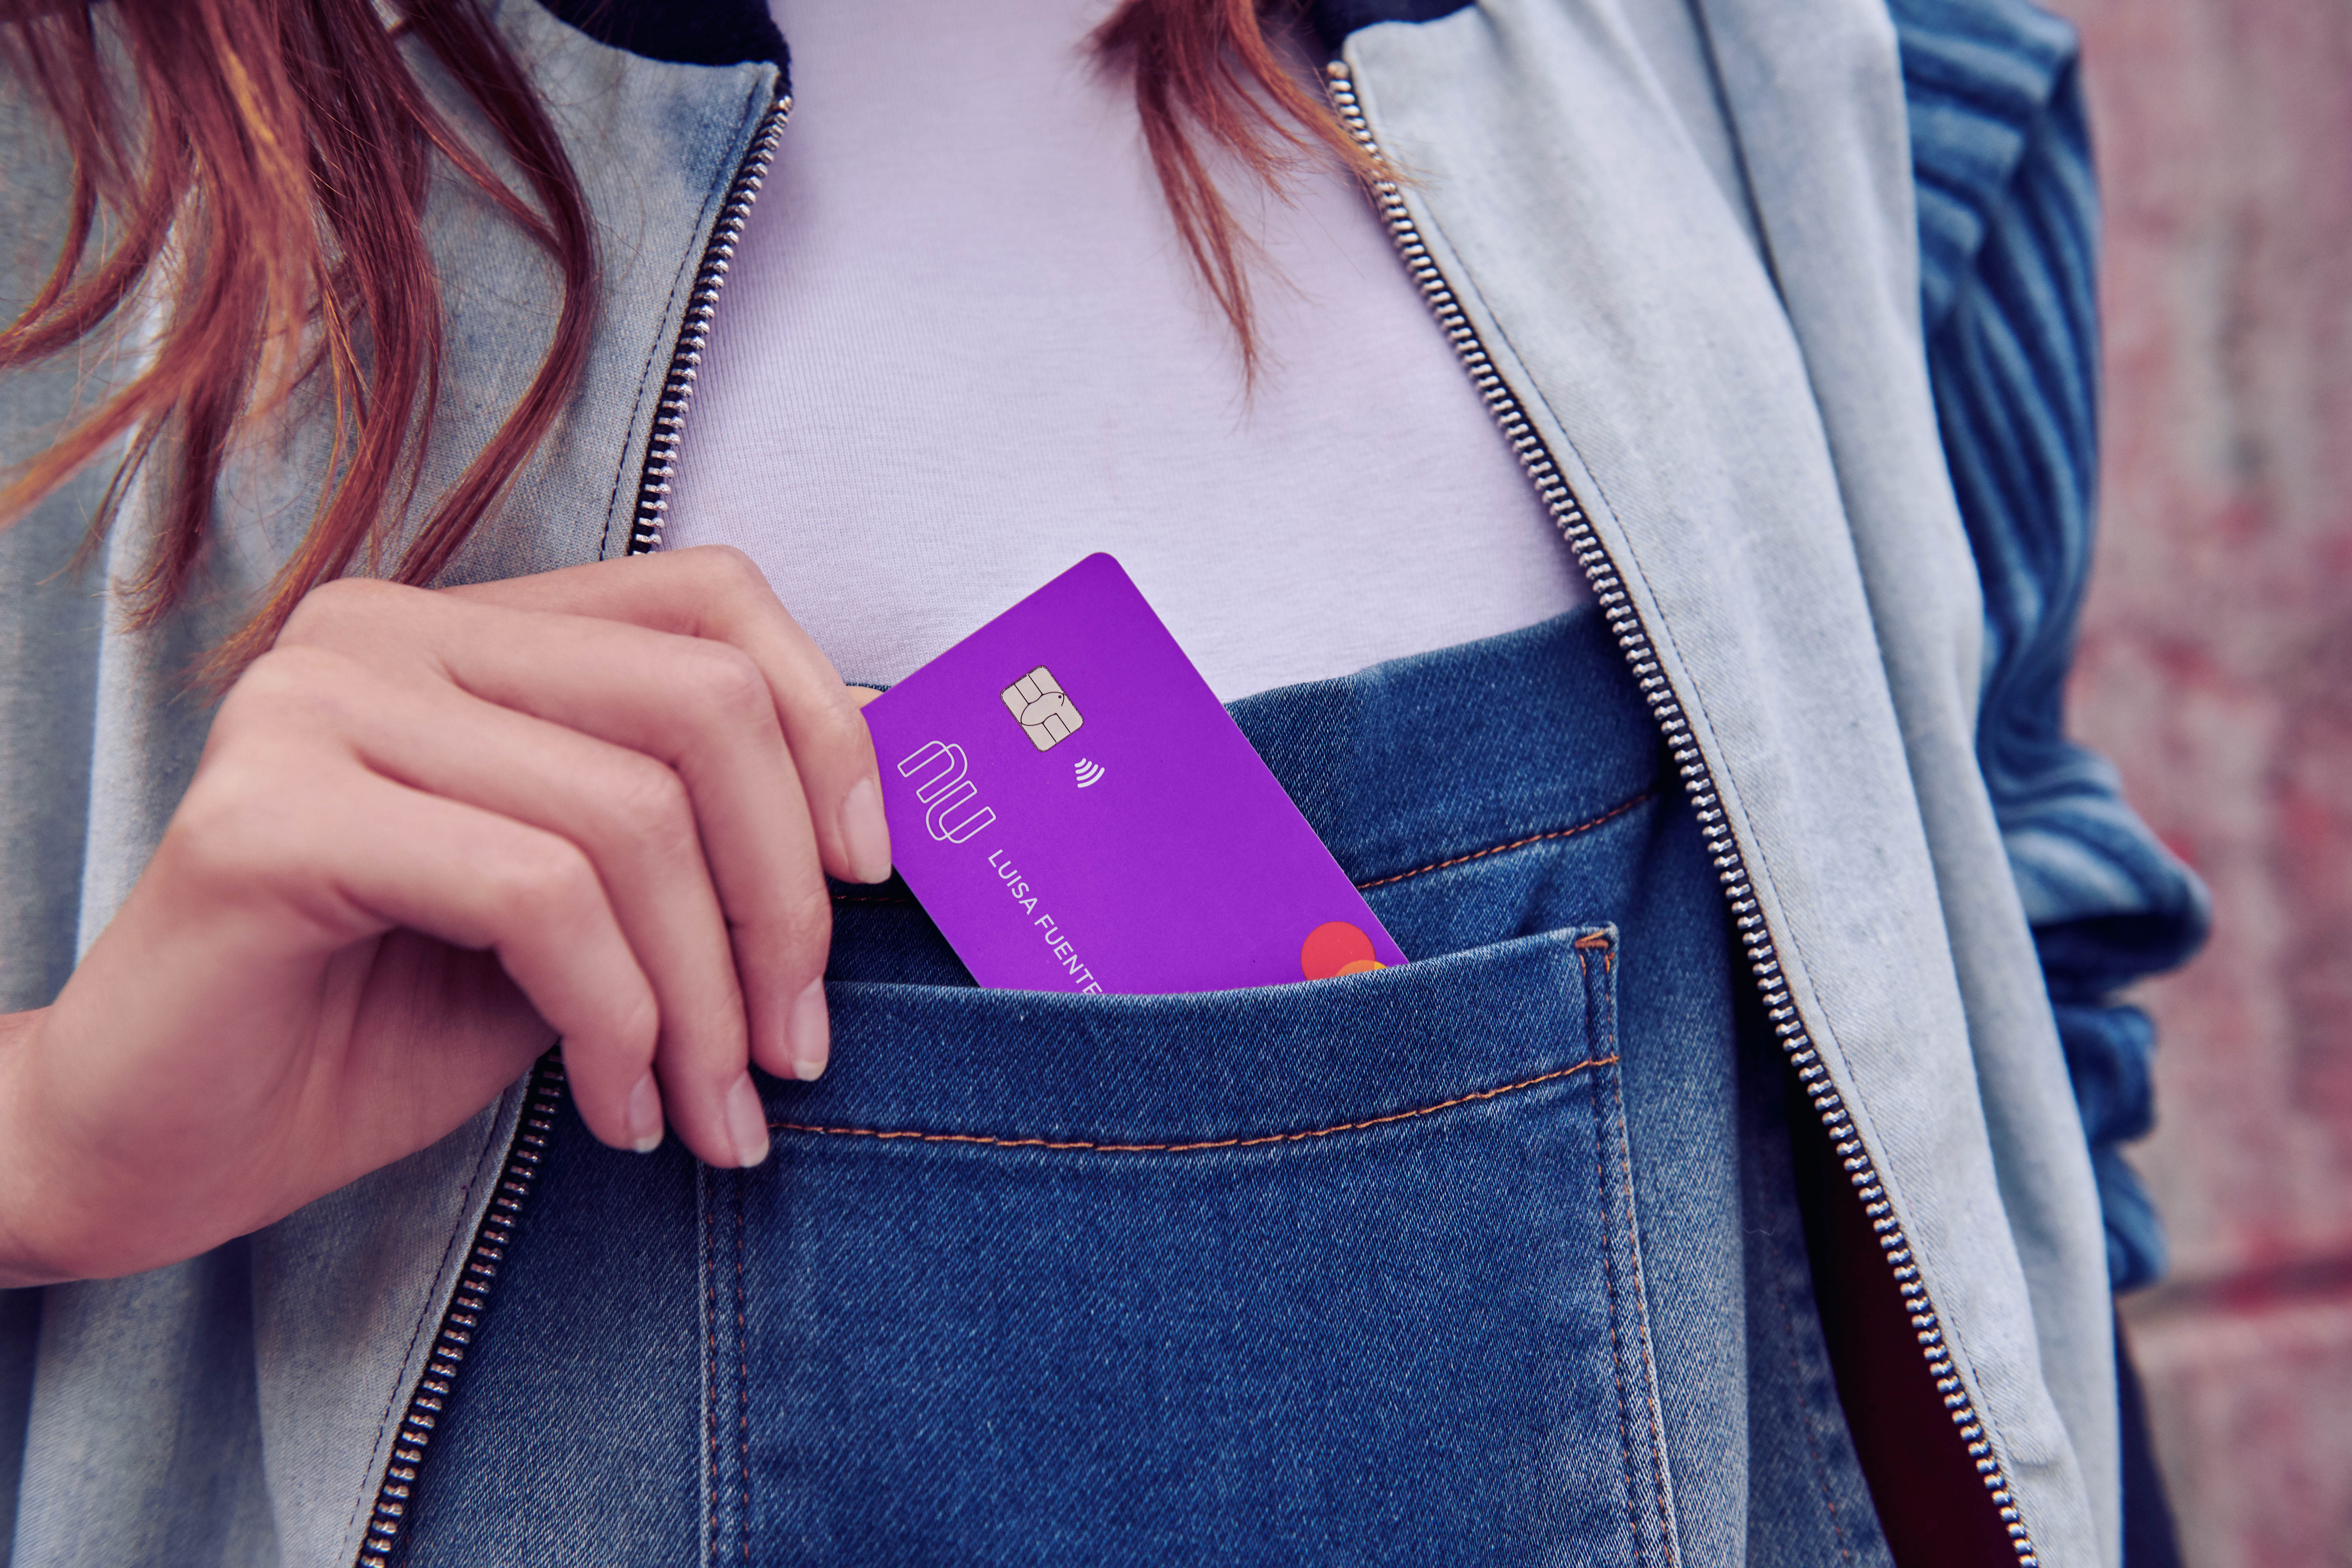 Nubank tiene reportó que tiene más 500,000 solicitudes de tarjeta de crédito (Foto: Nubank)